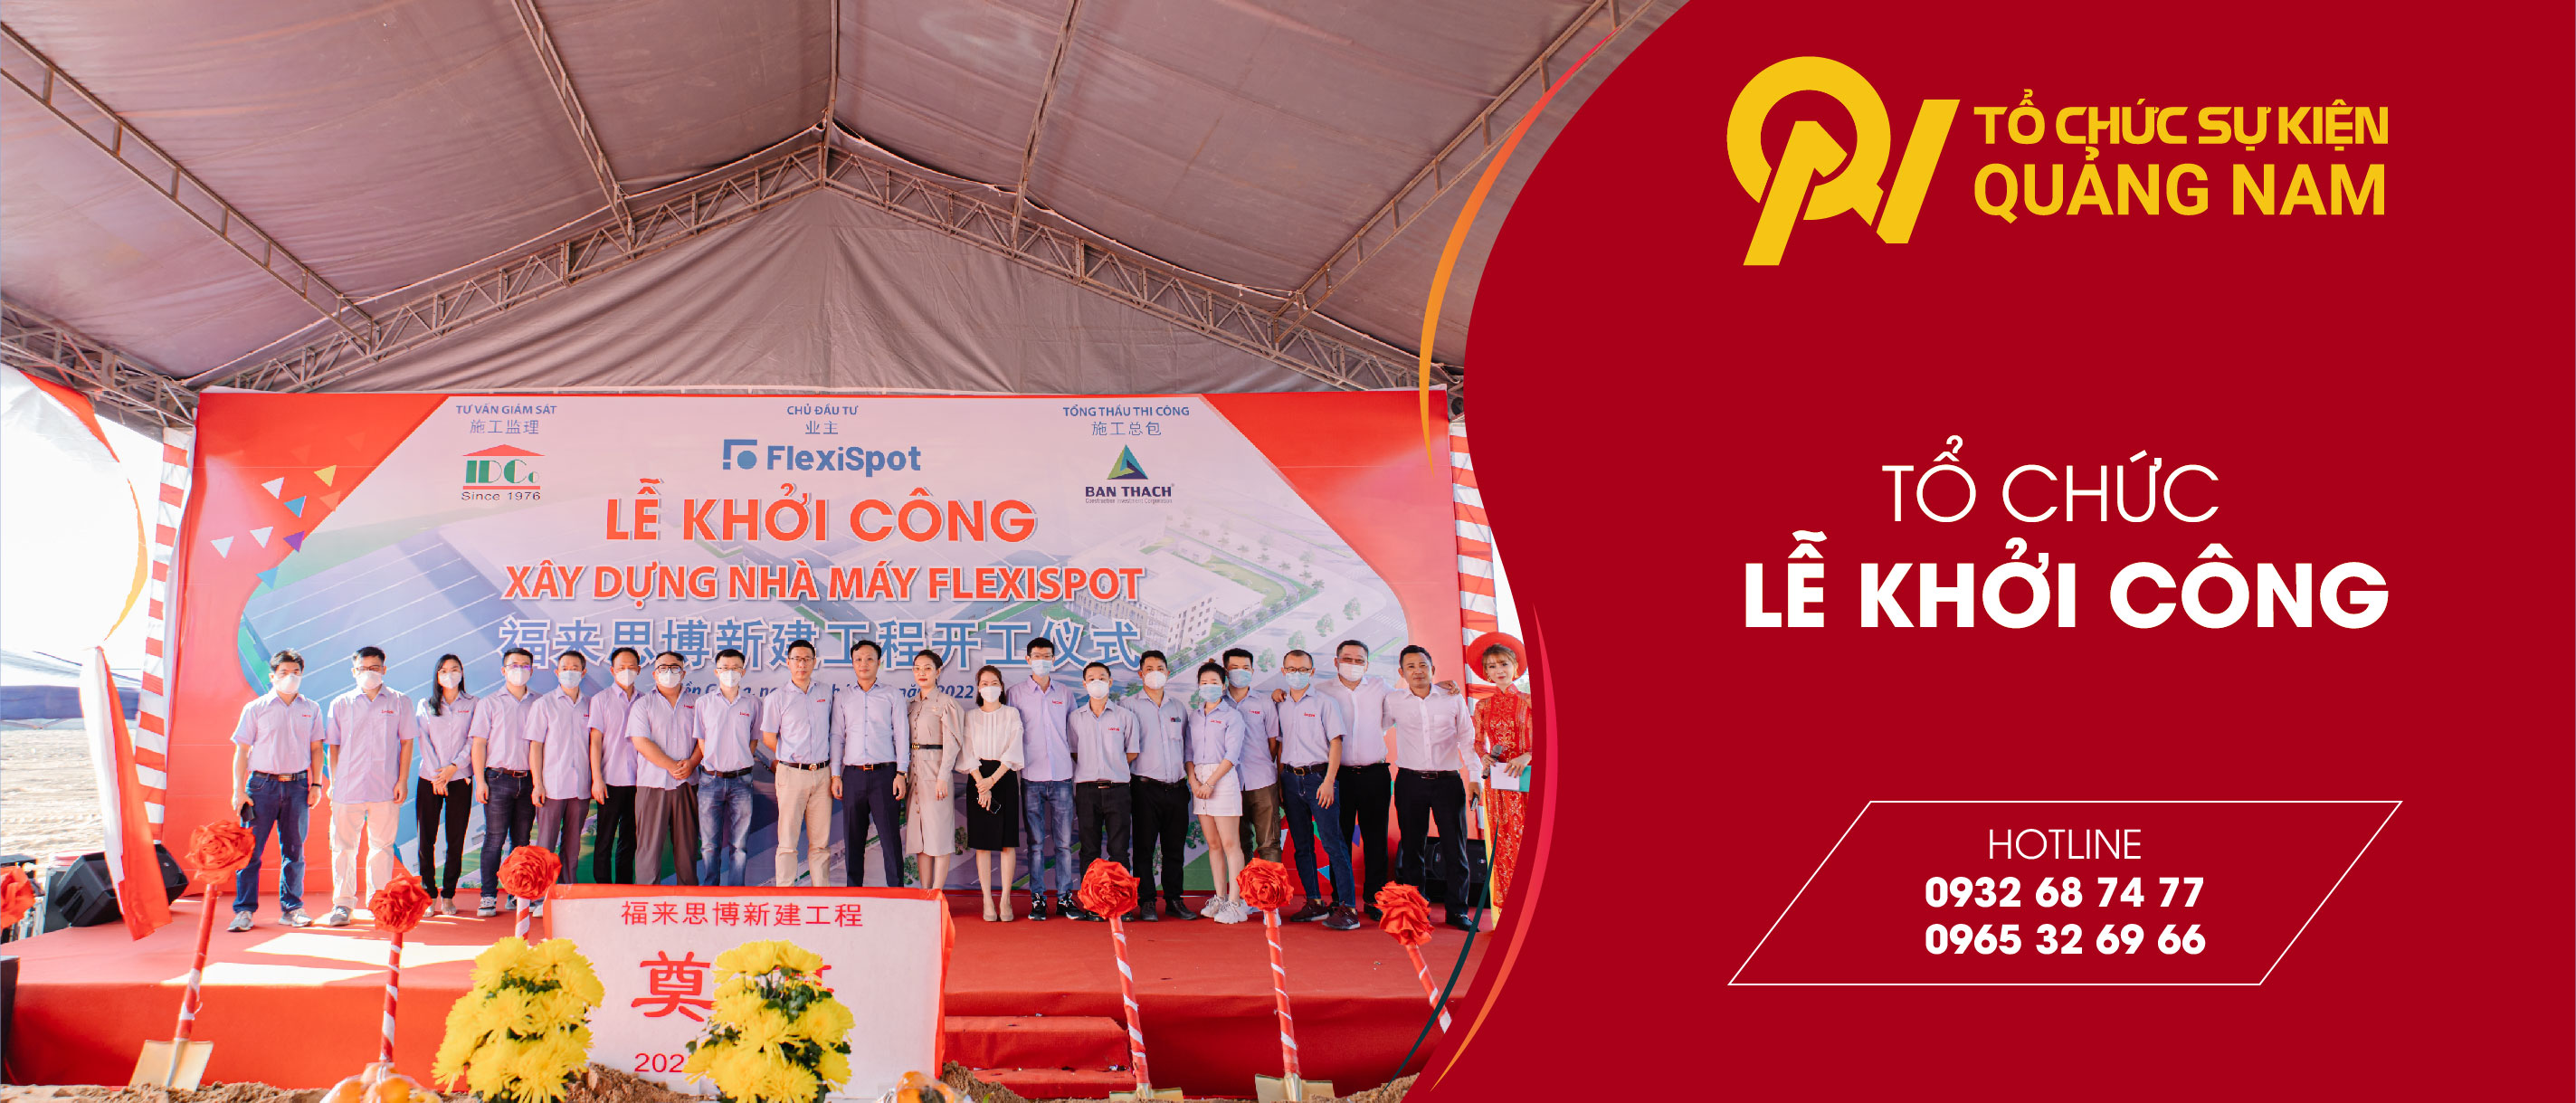 Tổ chức lễ khởi công chuyên nghiệp tại Quảng Nam